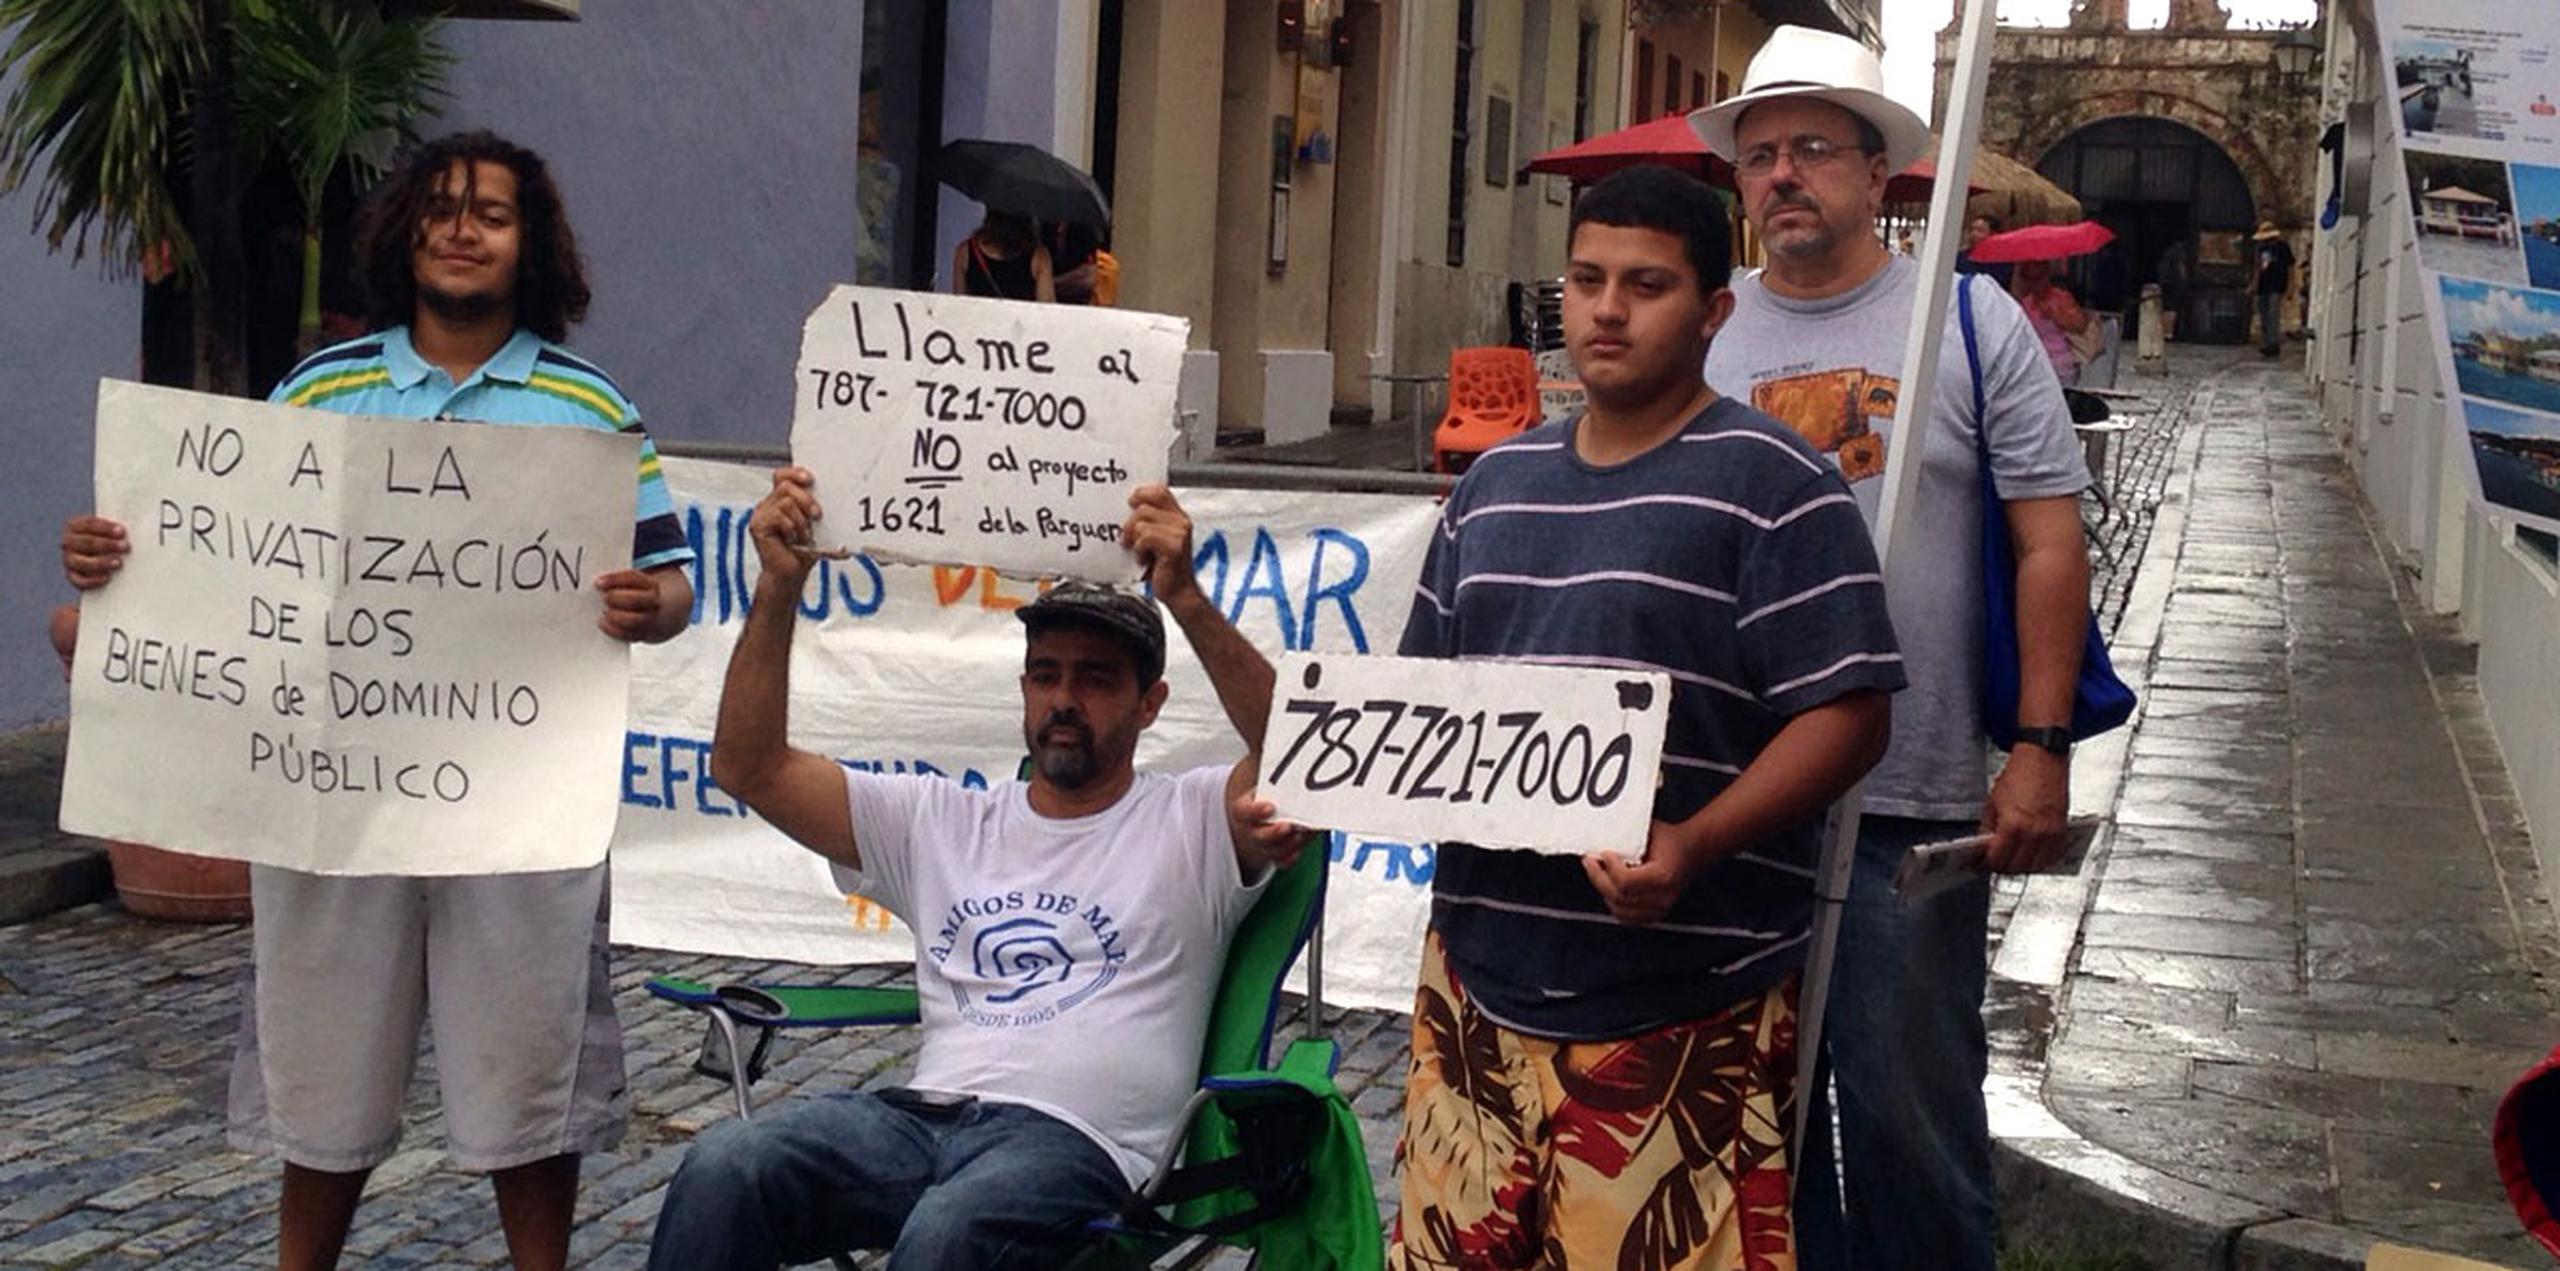 El activista Alberto de Jesús Mercado, mejor conocido como Tito Kayak, inició ayer en la mañana una huelga de hambre y vigilia, y se mantiene en el Viejo San Juan junto a un grupo de manifestantes.